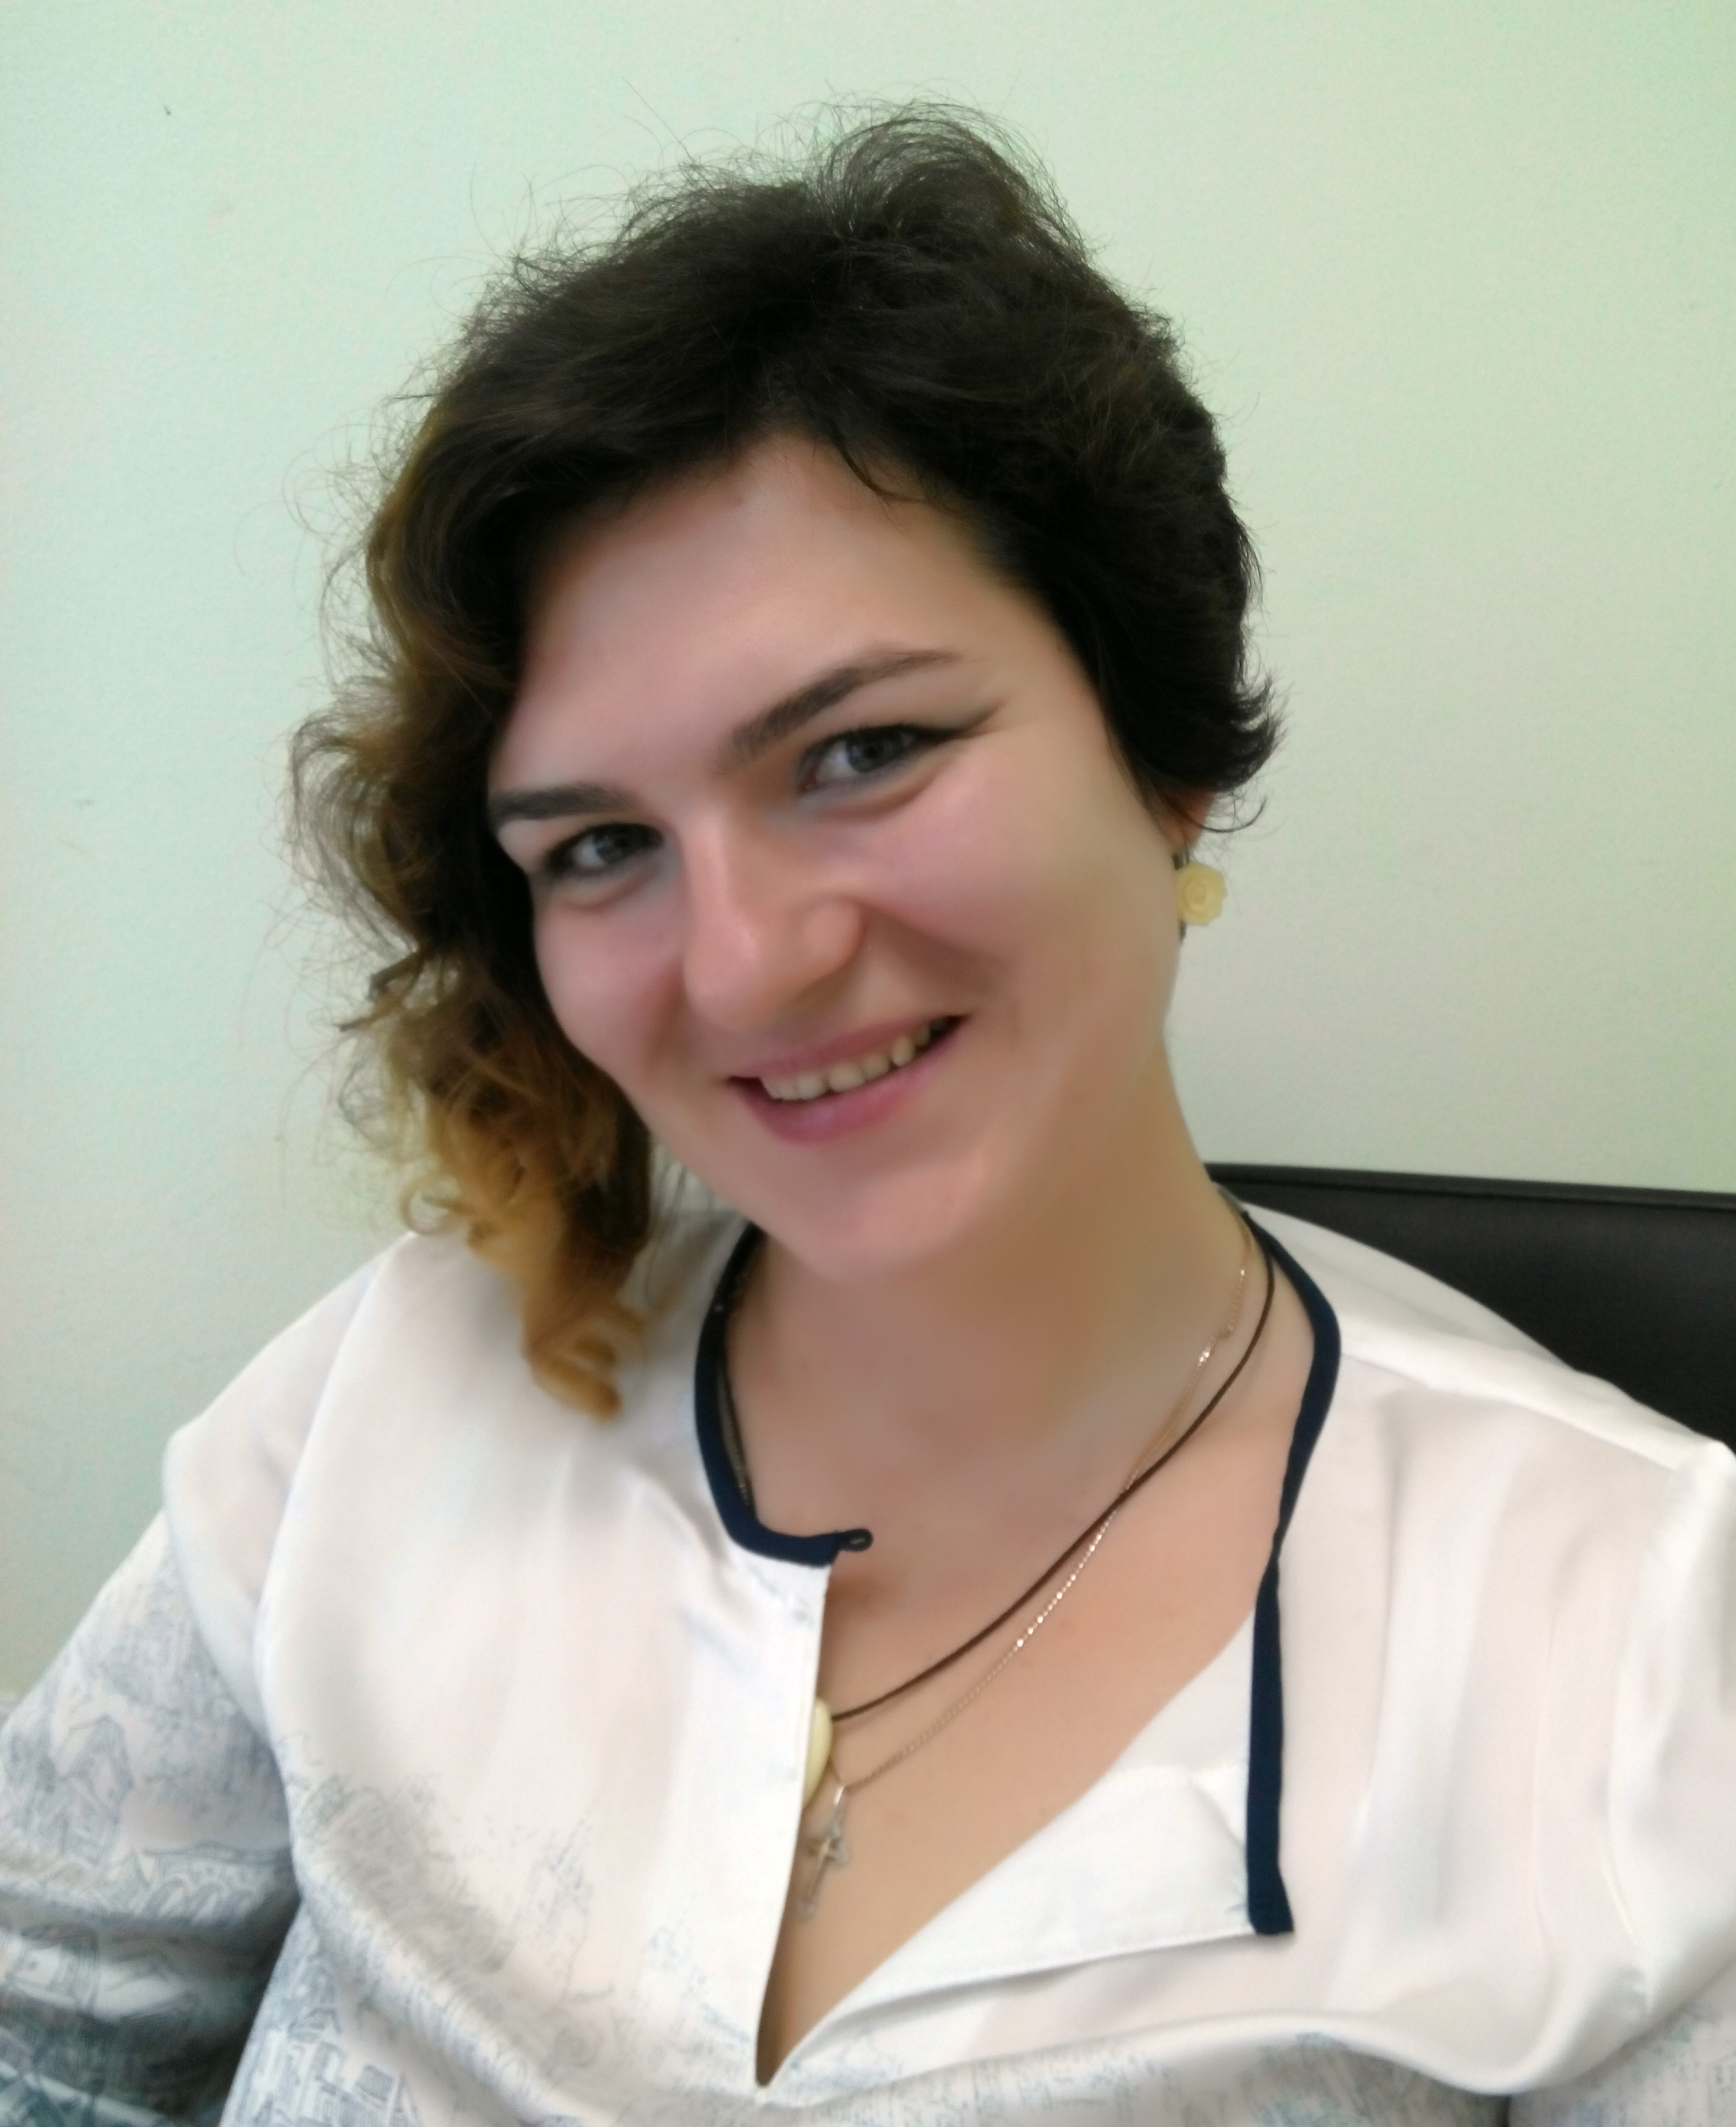 Милена Чебыкина, 30 лет, руководитель отдела в IT-компании